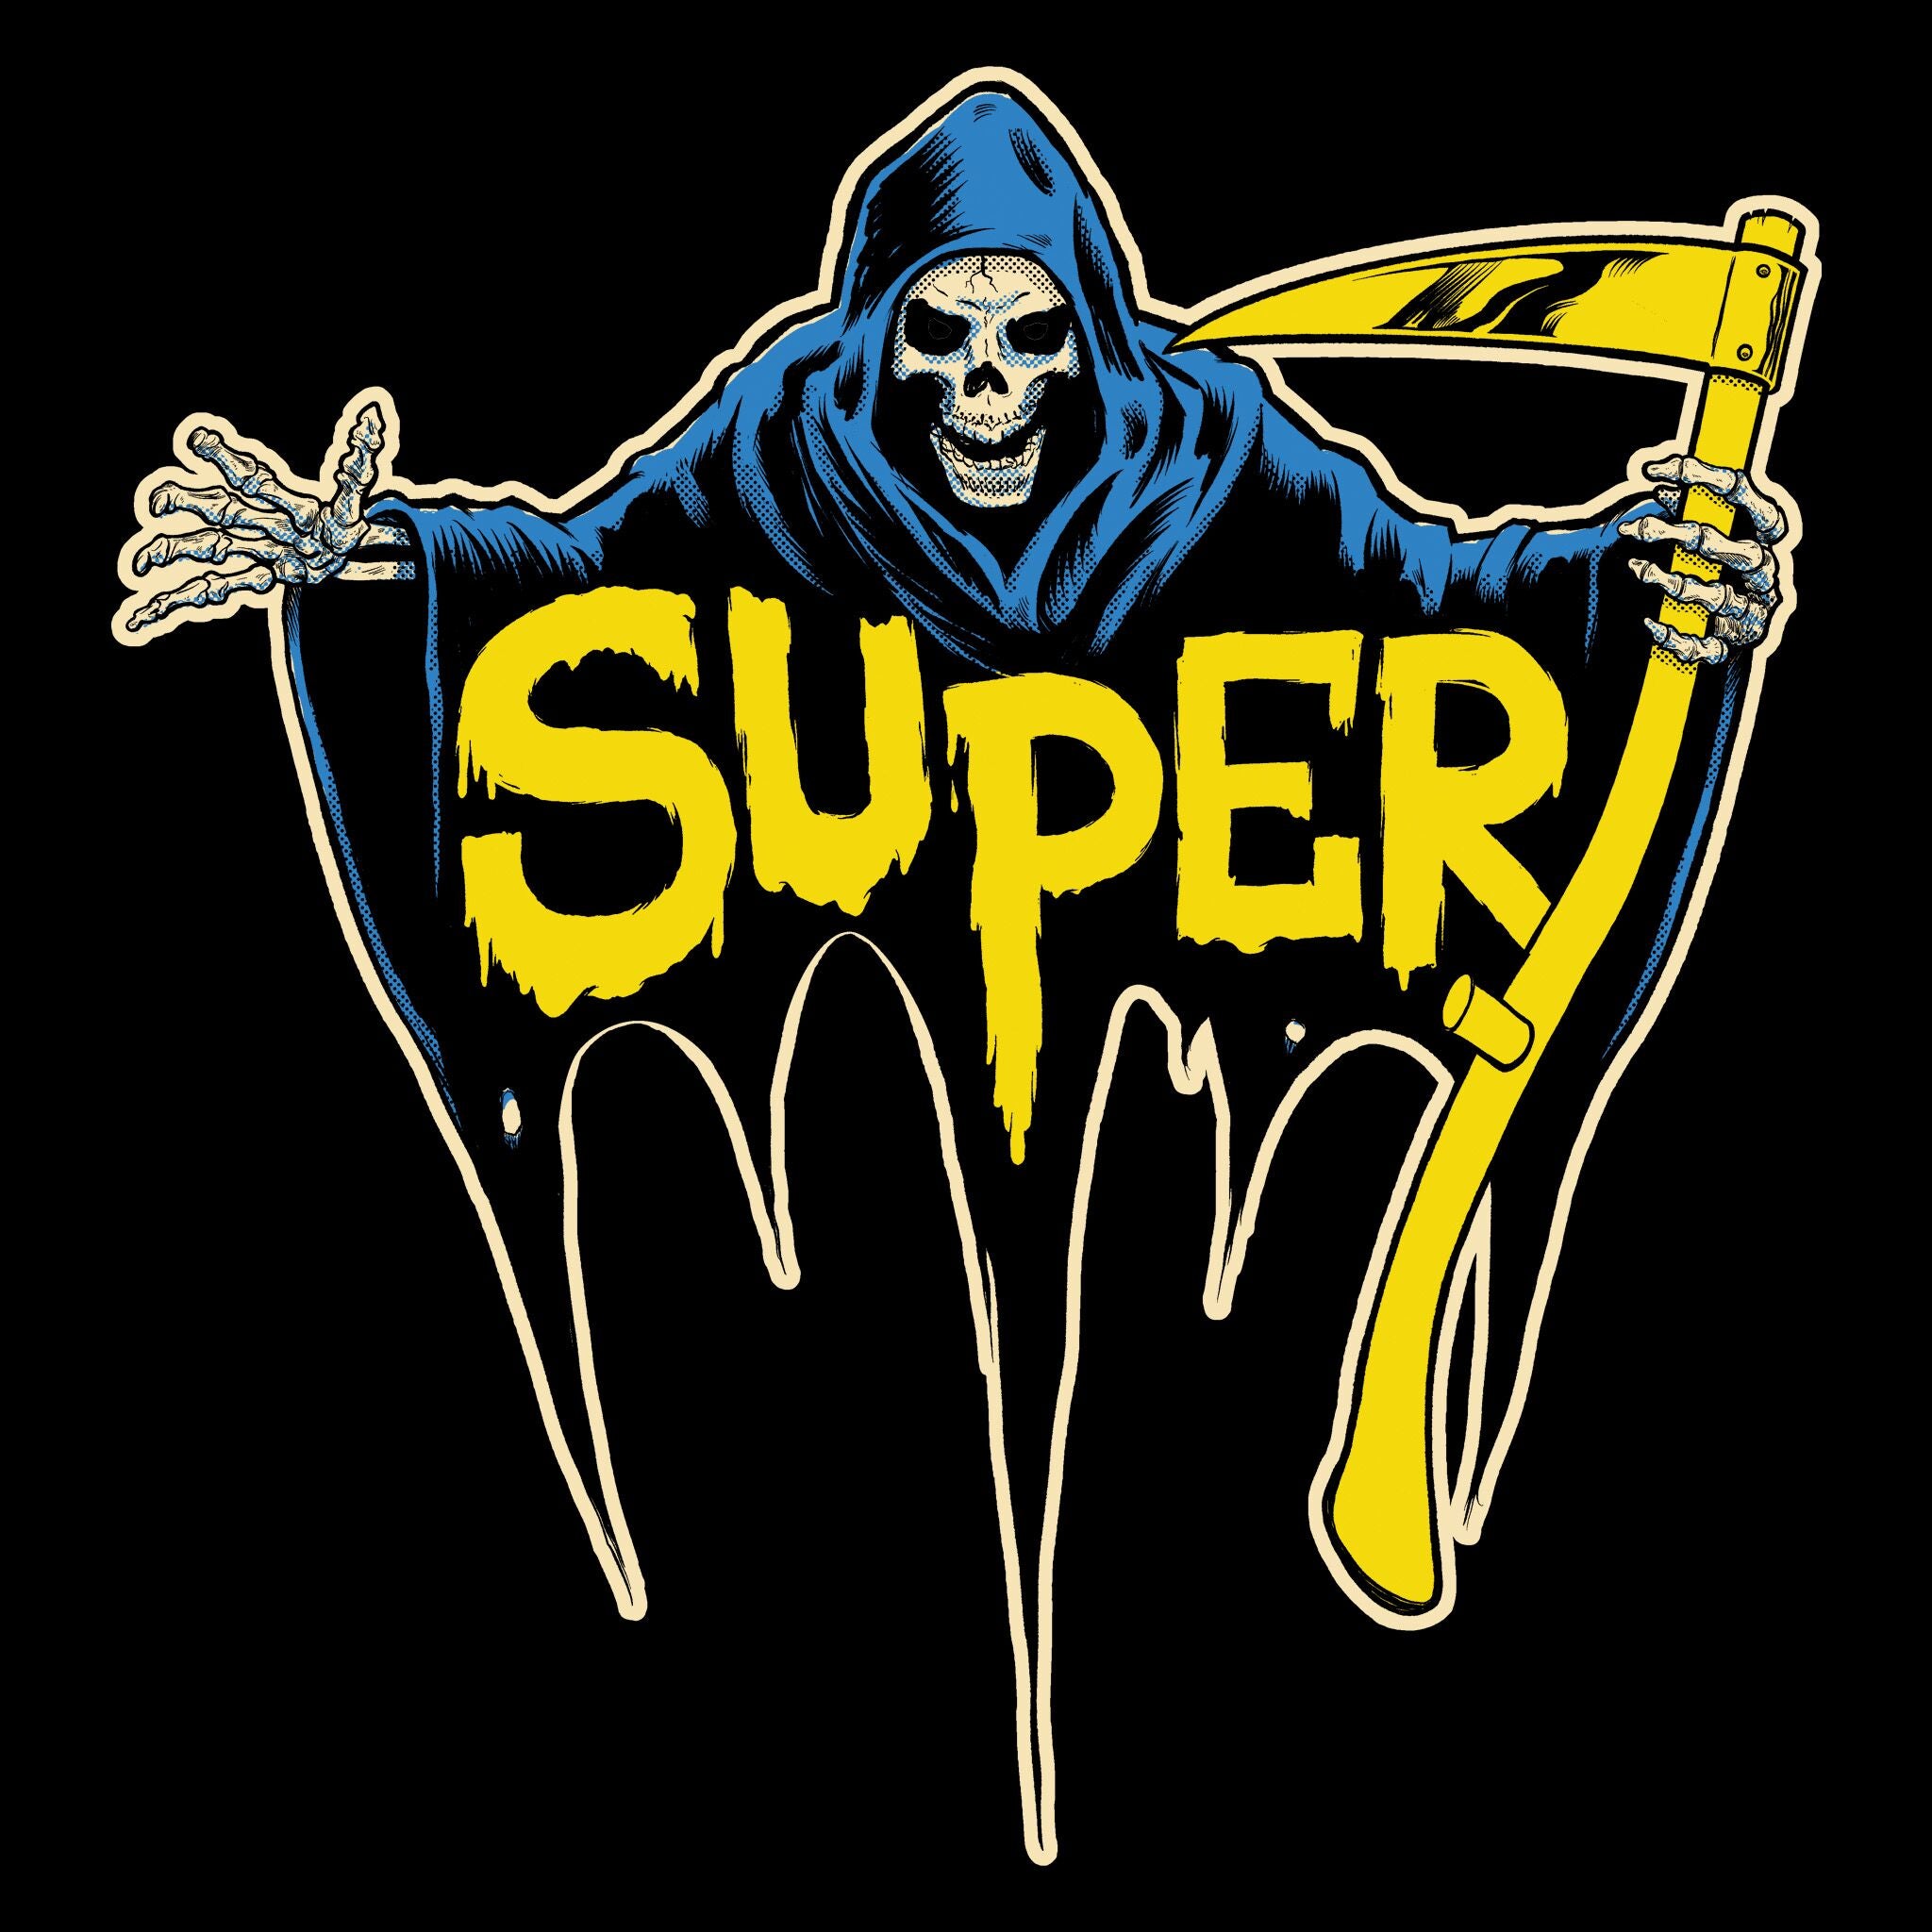 Super7 T-shirts - Super7 Reaper (Black)